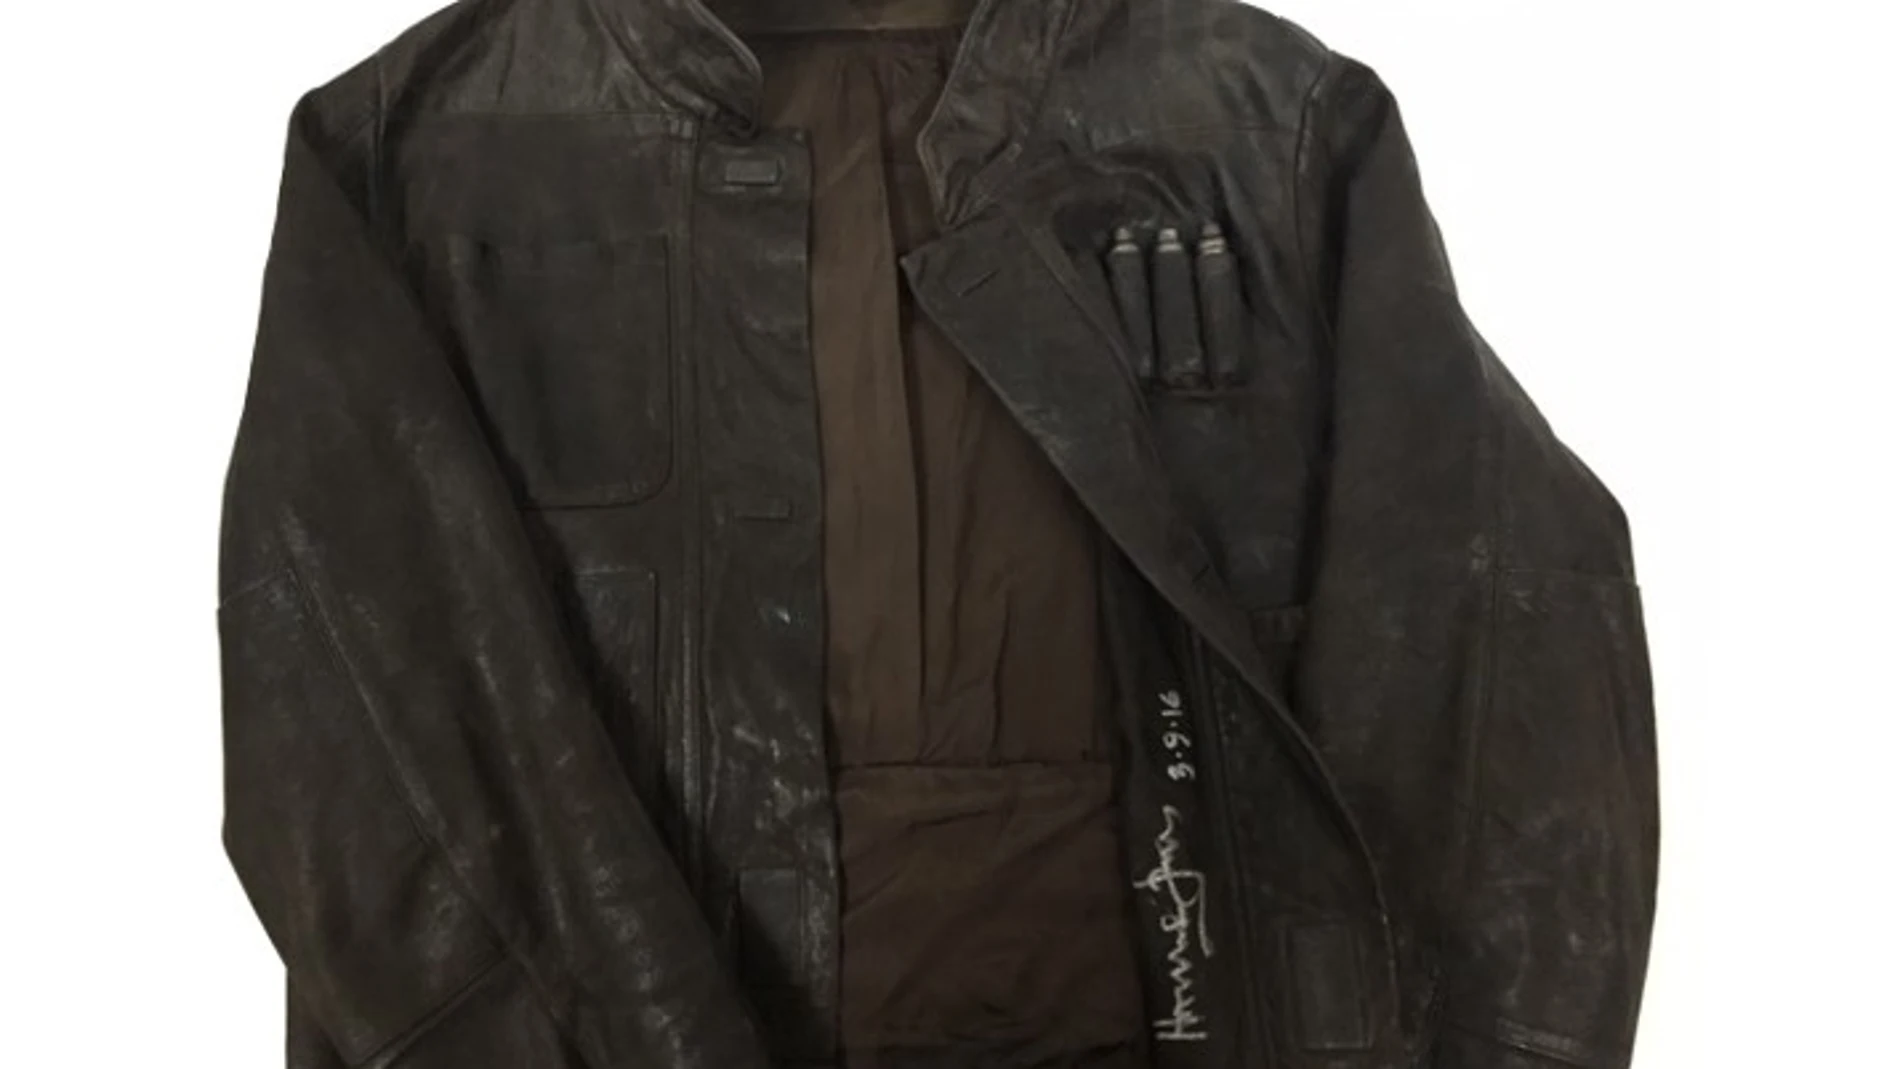 Harrison Ford subasta su chaqueta de Han Solo